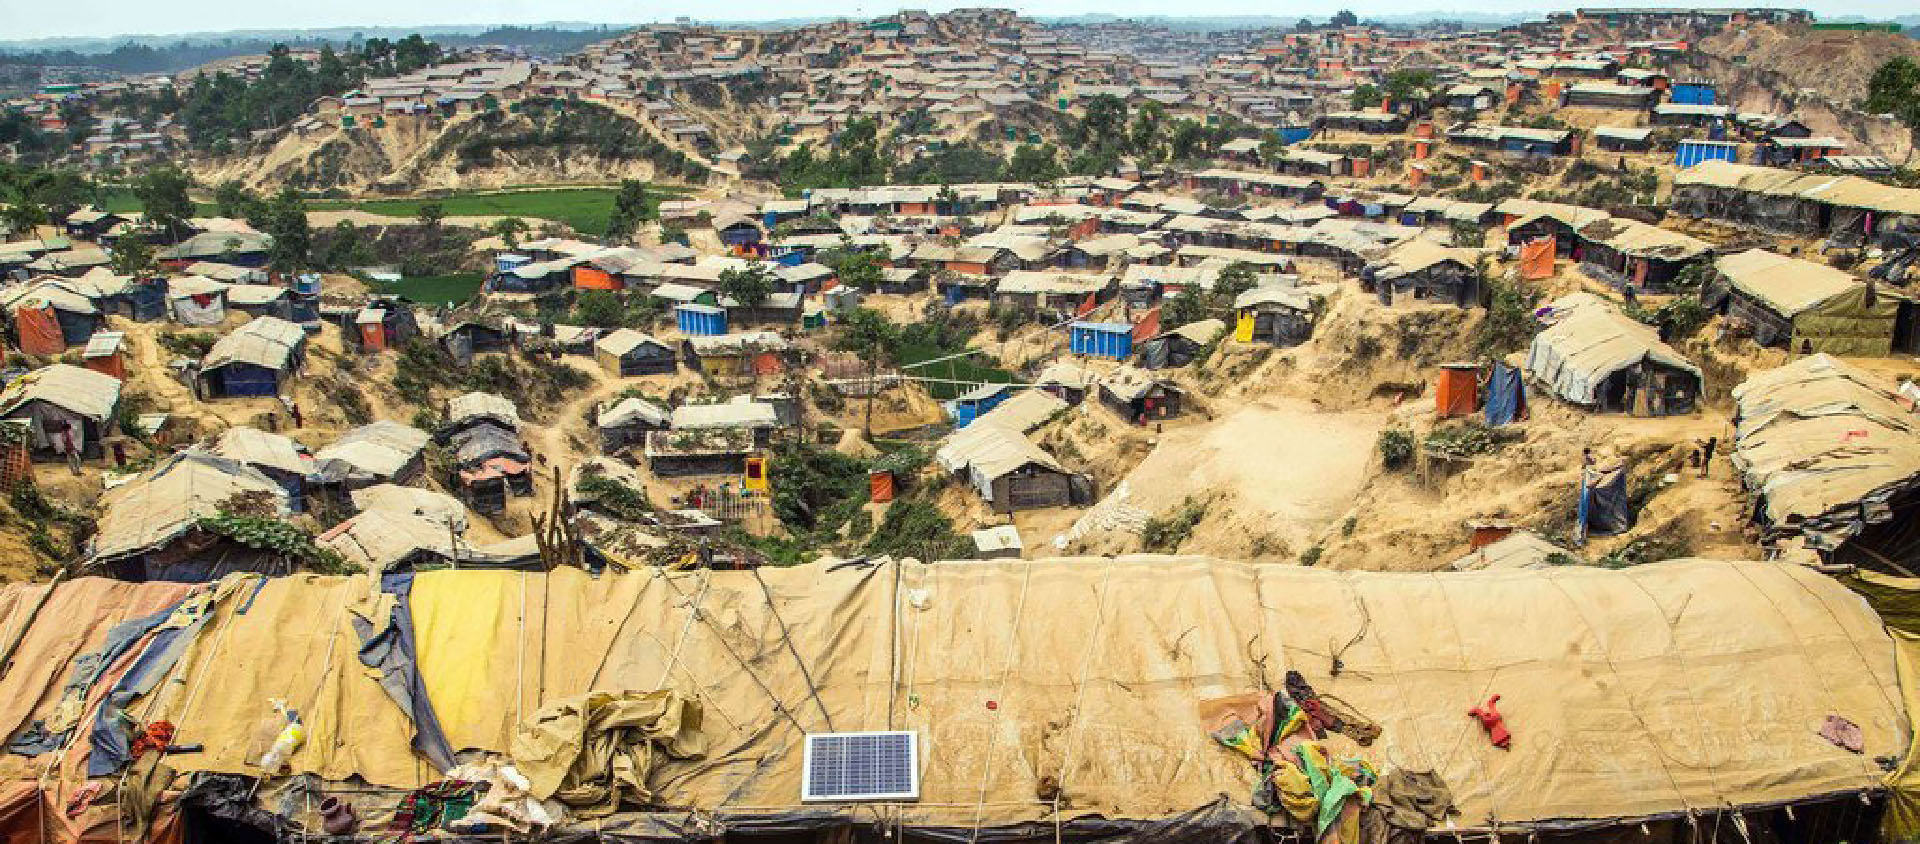 Le camp de réfugiés de Kutupalong à Cox's Bazar, au Bangladesh, accueille des centaines de milliers de Rohingyas qui ont fui les violences au Myanmar | © UNOCHA/Vincent Tremeau